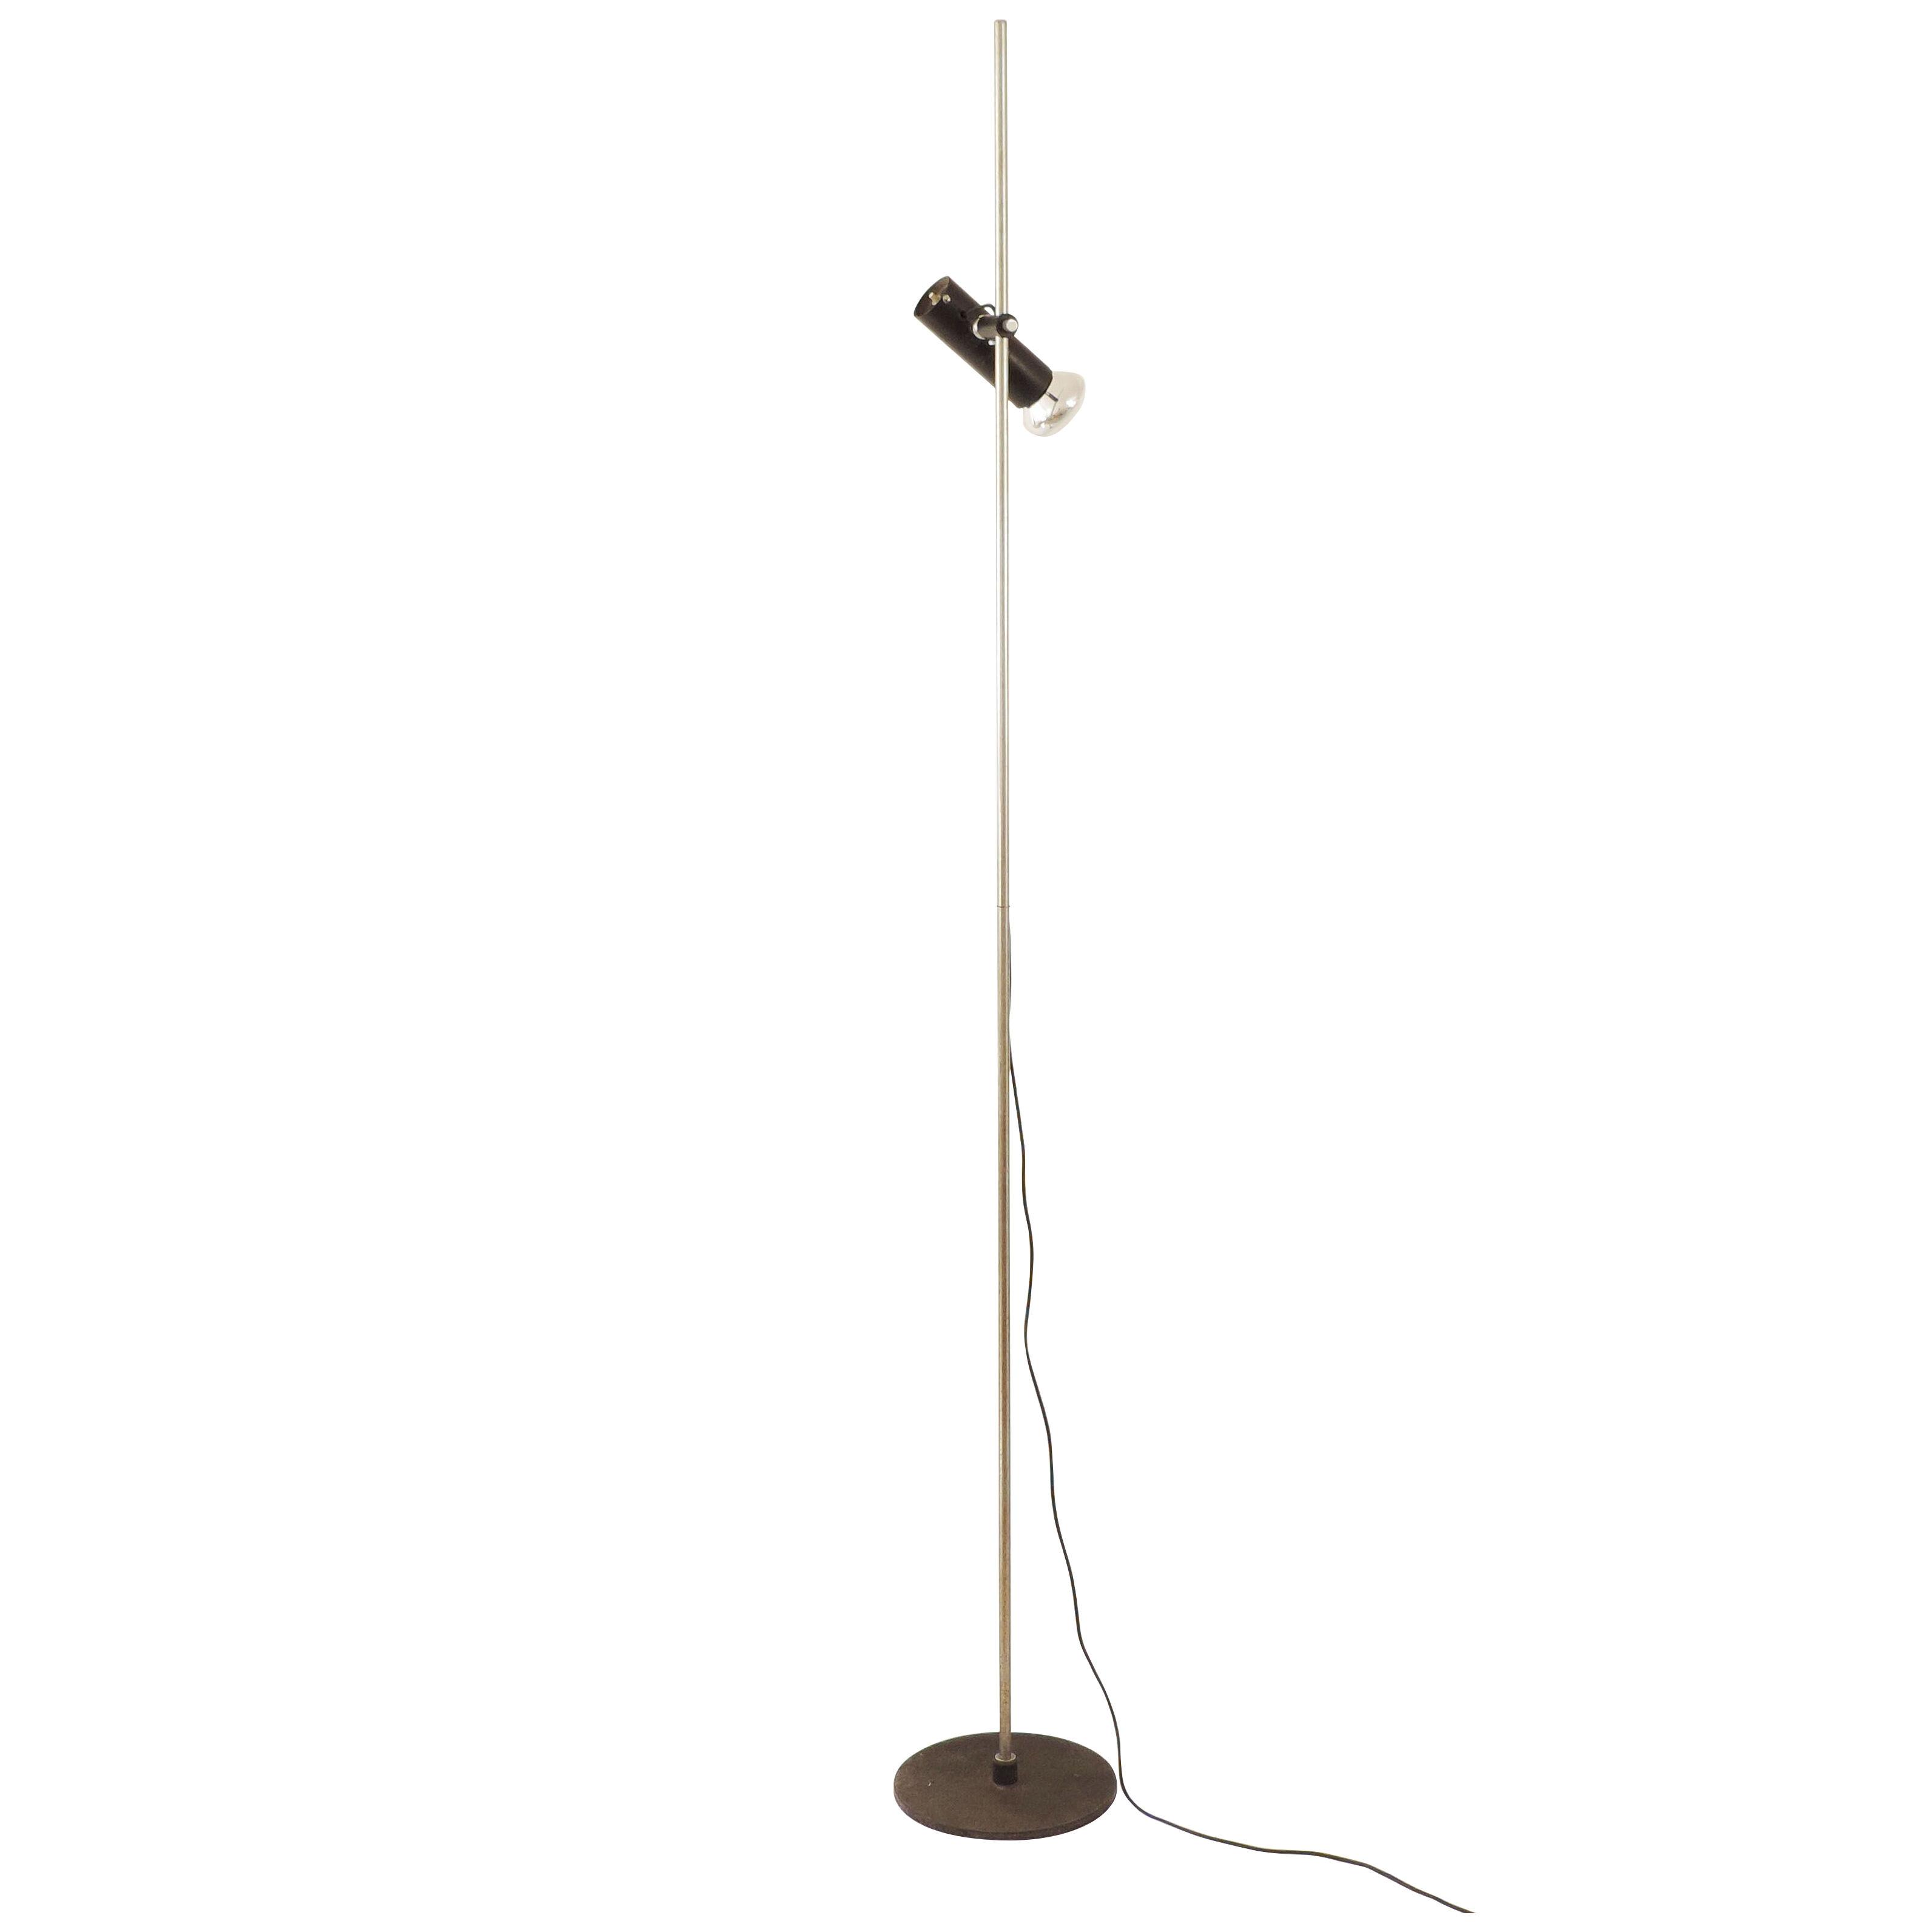 Gino Sarfatti Model 1055 Floor Lamp for Arteluce, Italy 1955